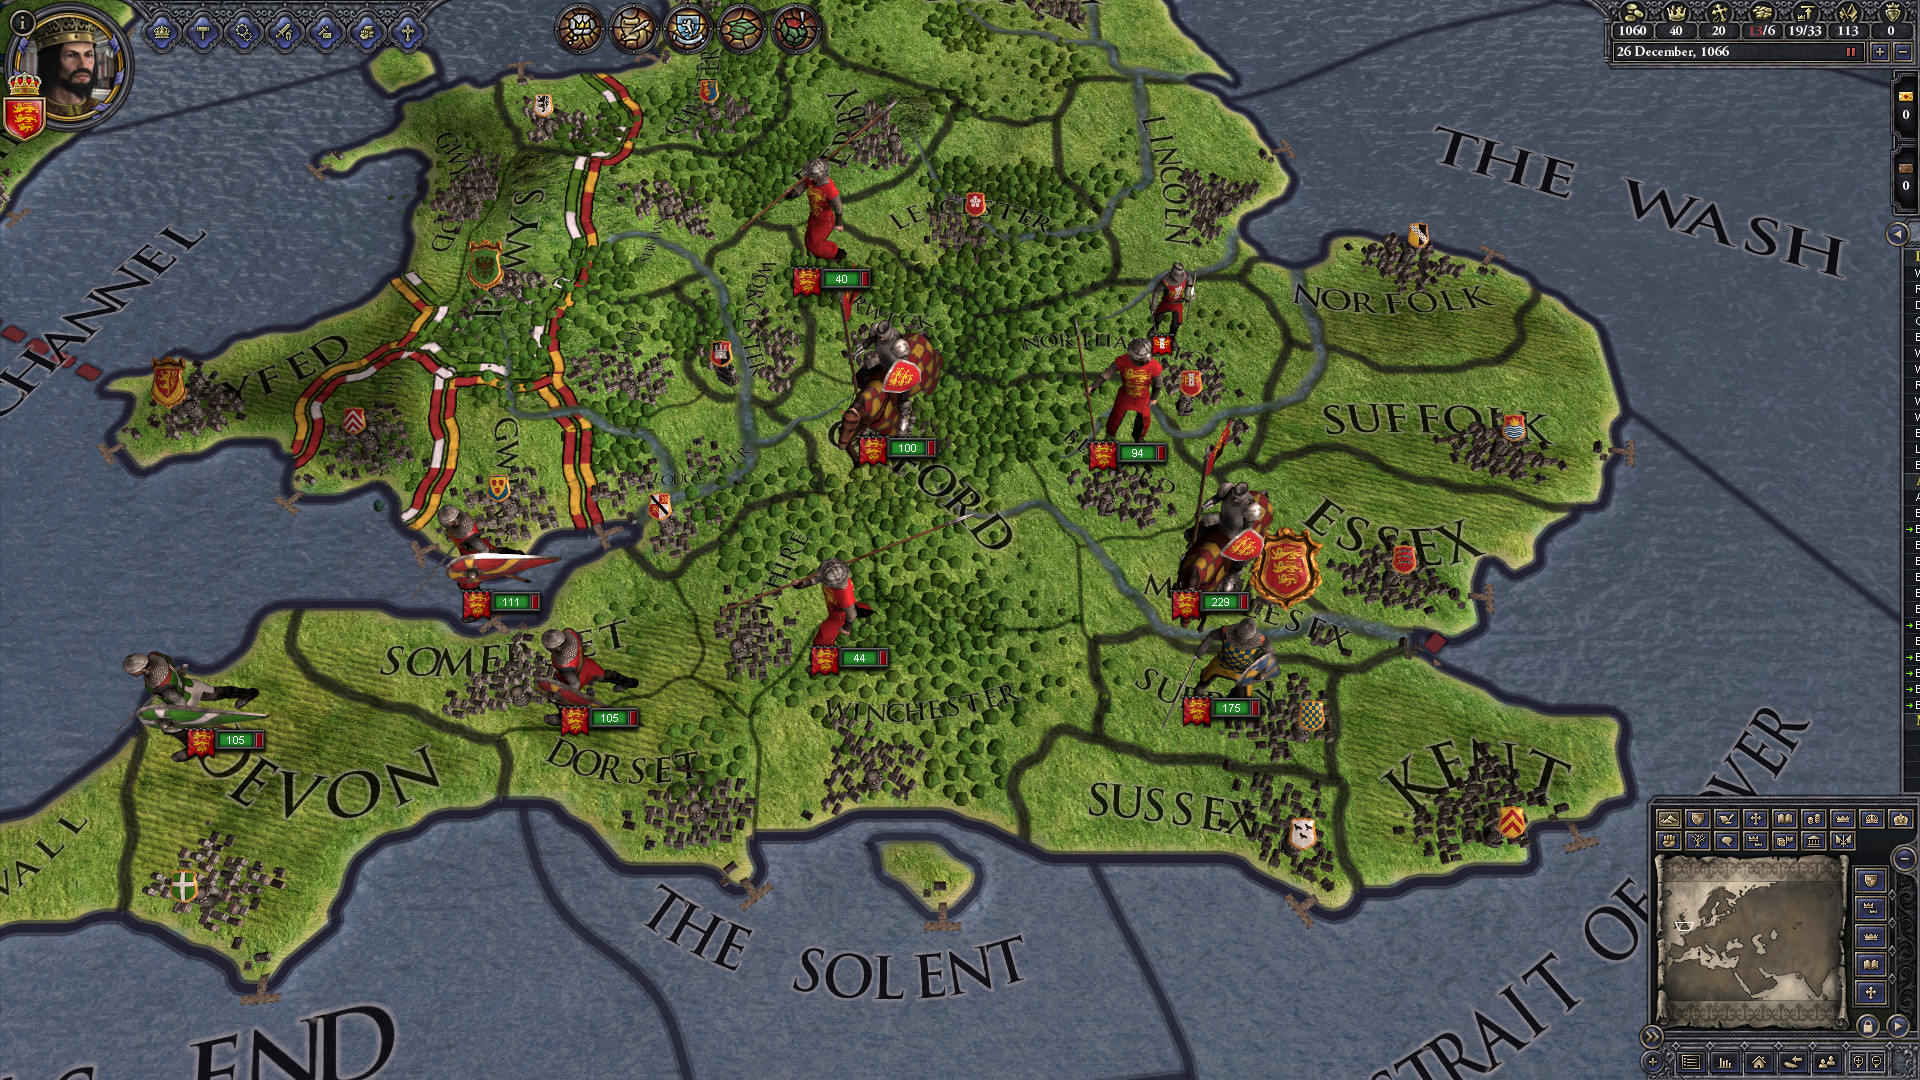 Crusader Kings II screenshot